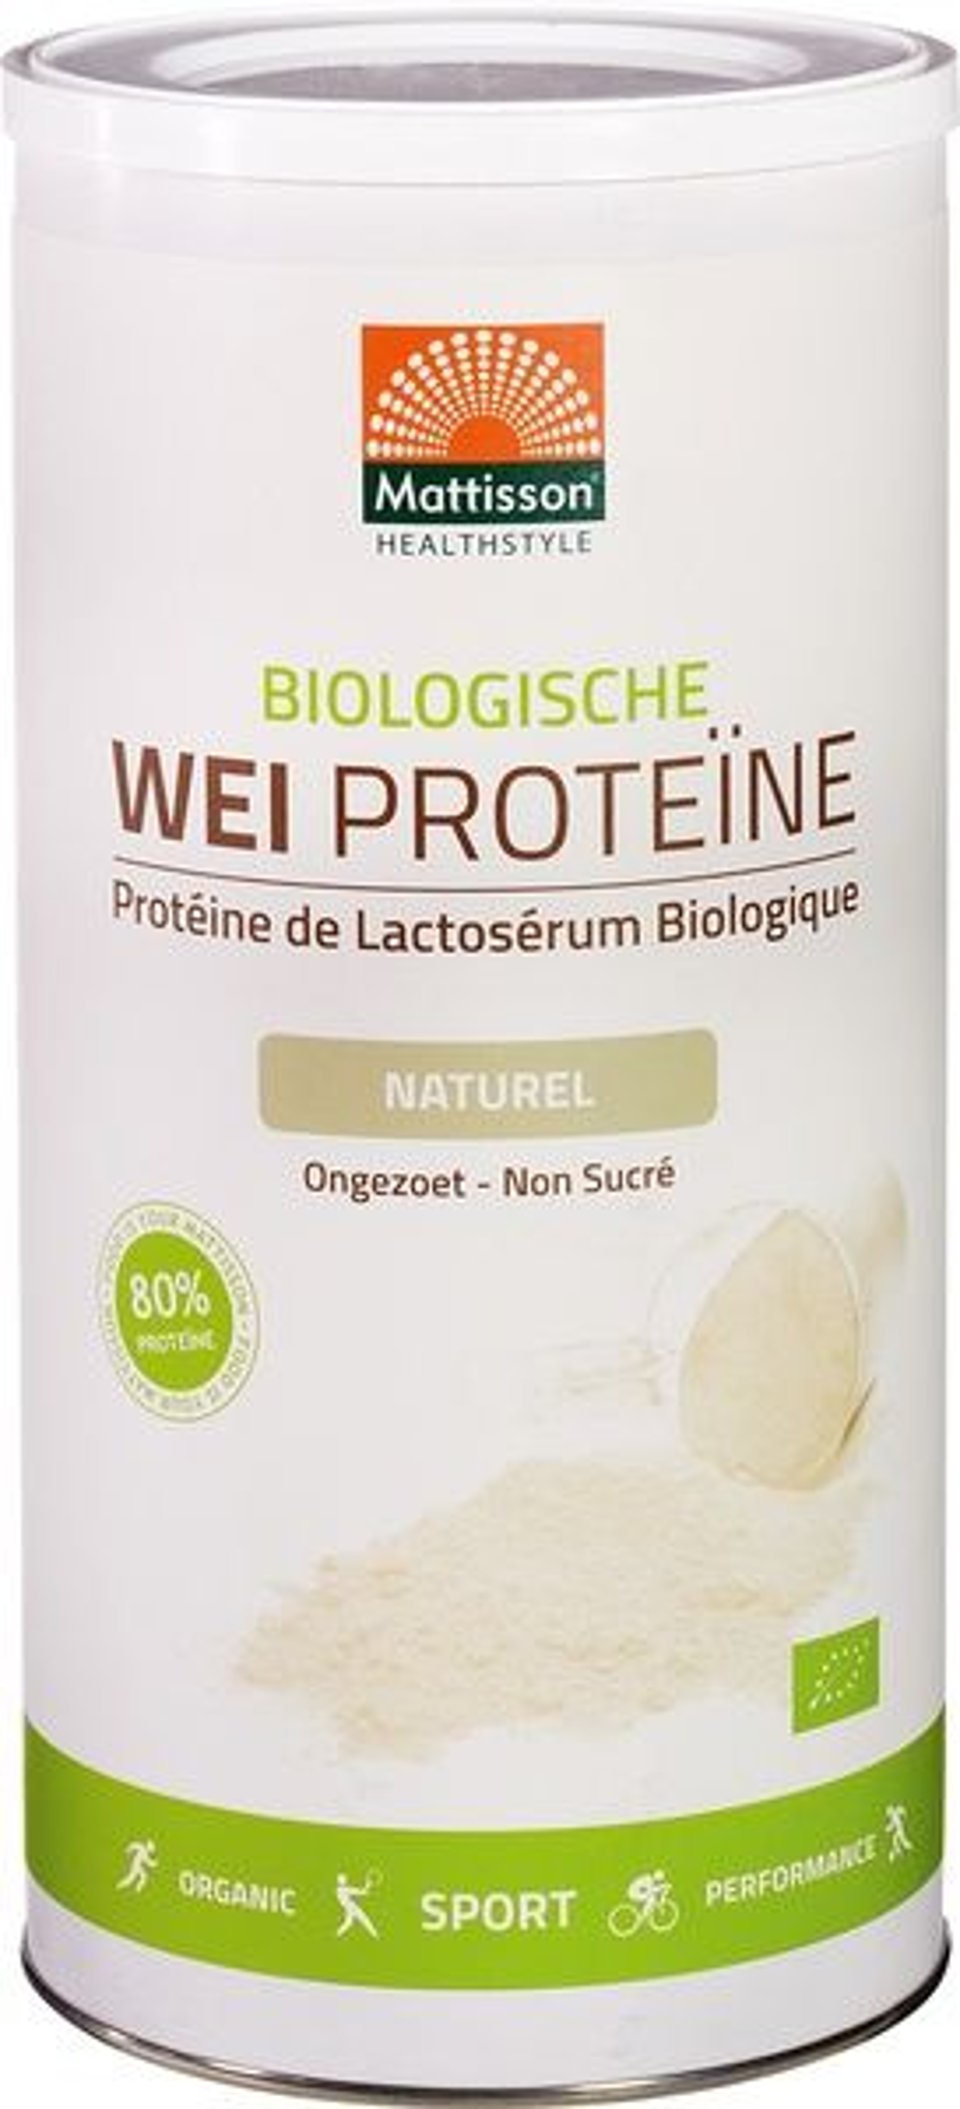 Mattisson Wei Proteine Naturel 450 Gram